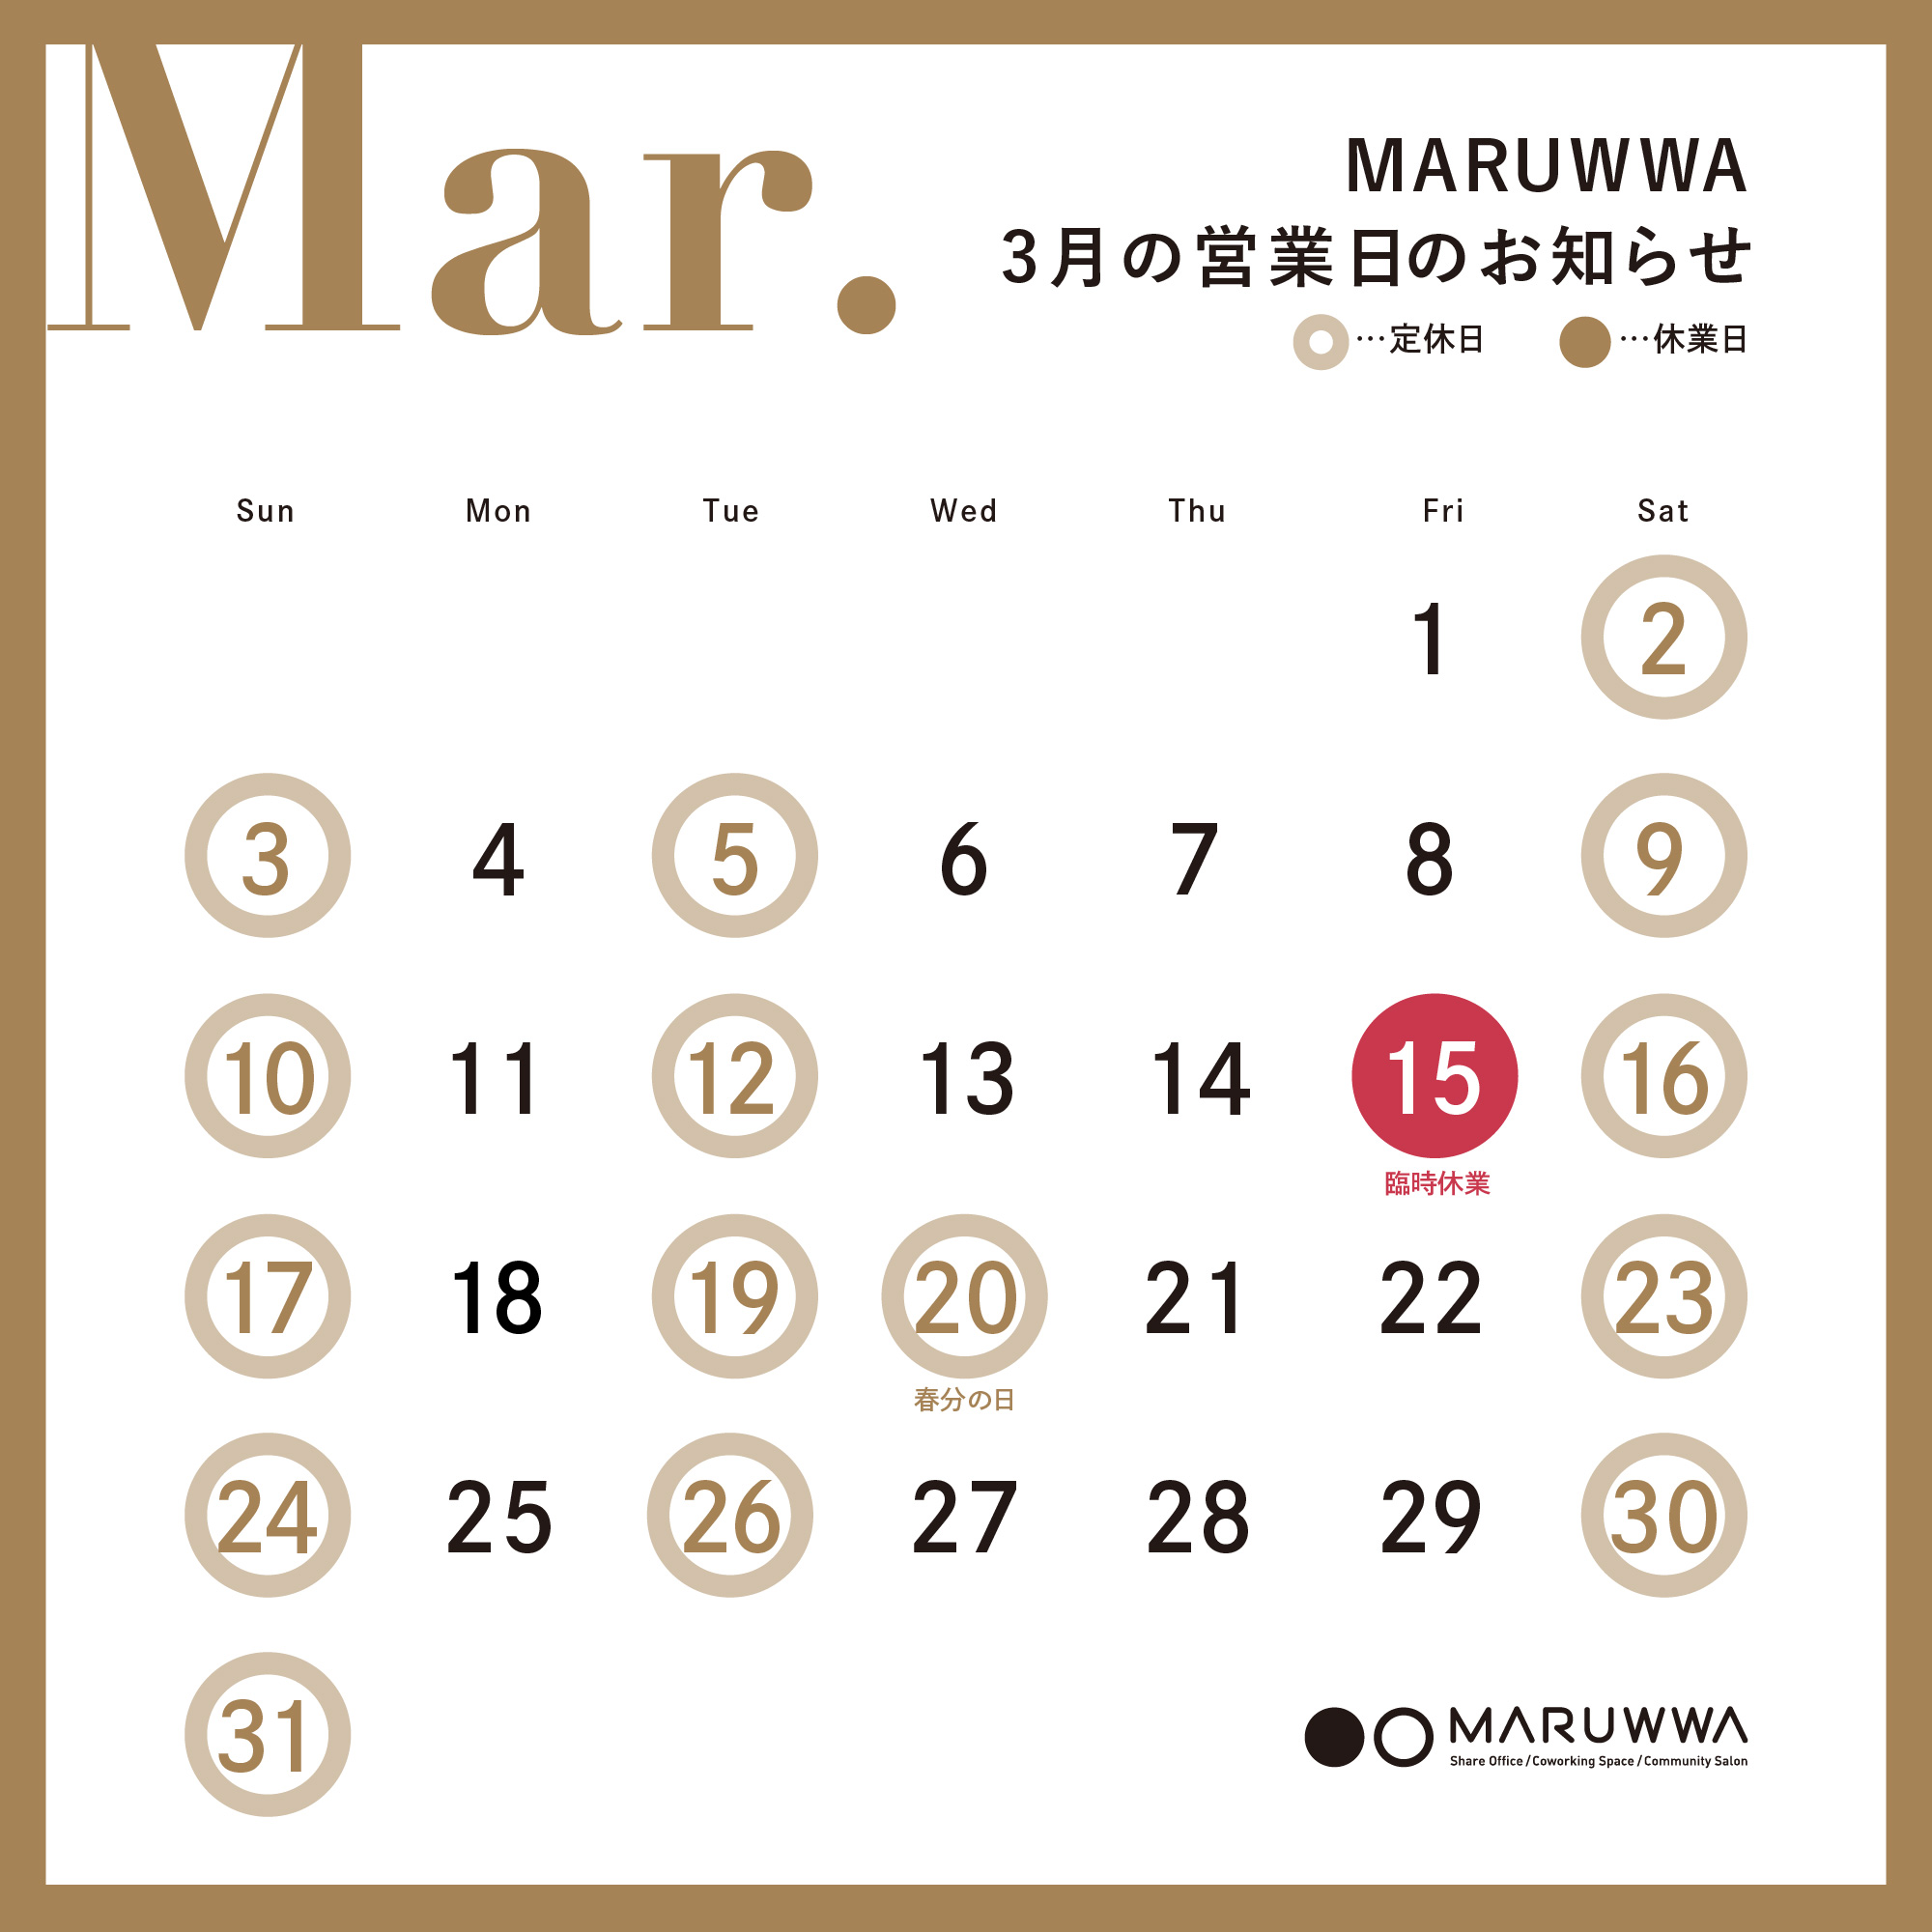 MARUWWA 3月の営業日